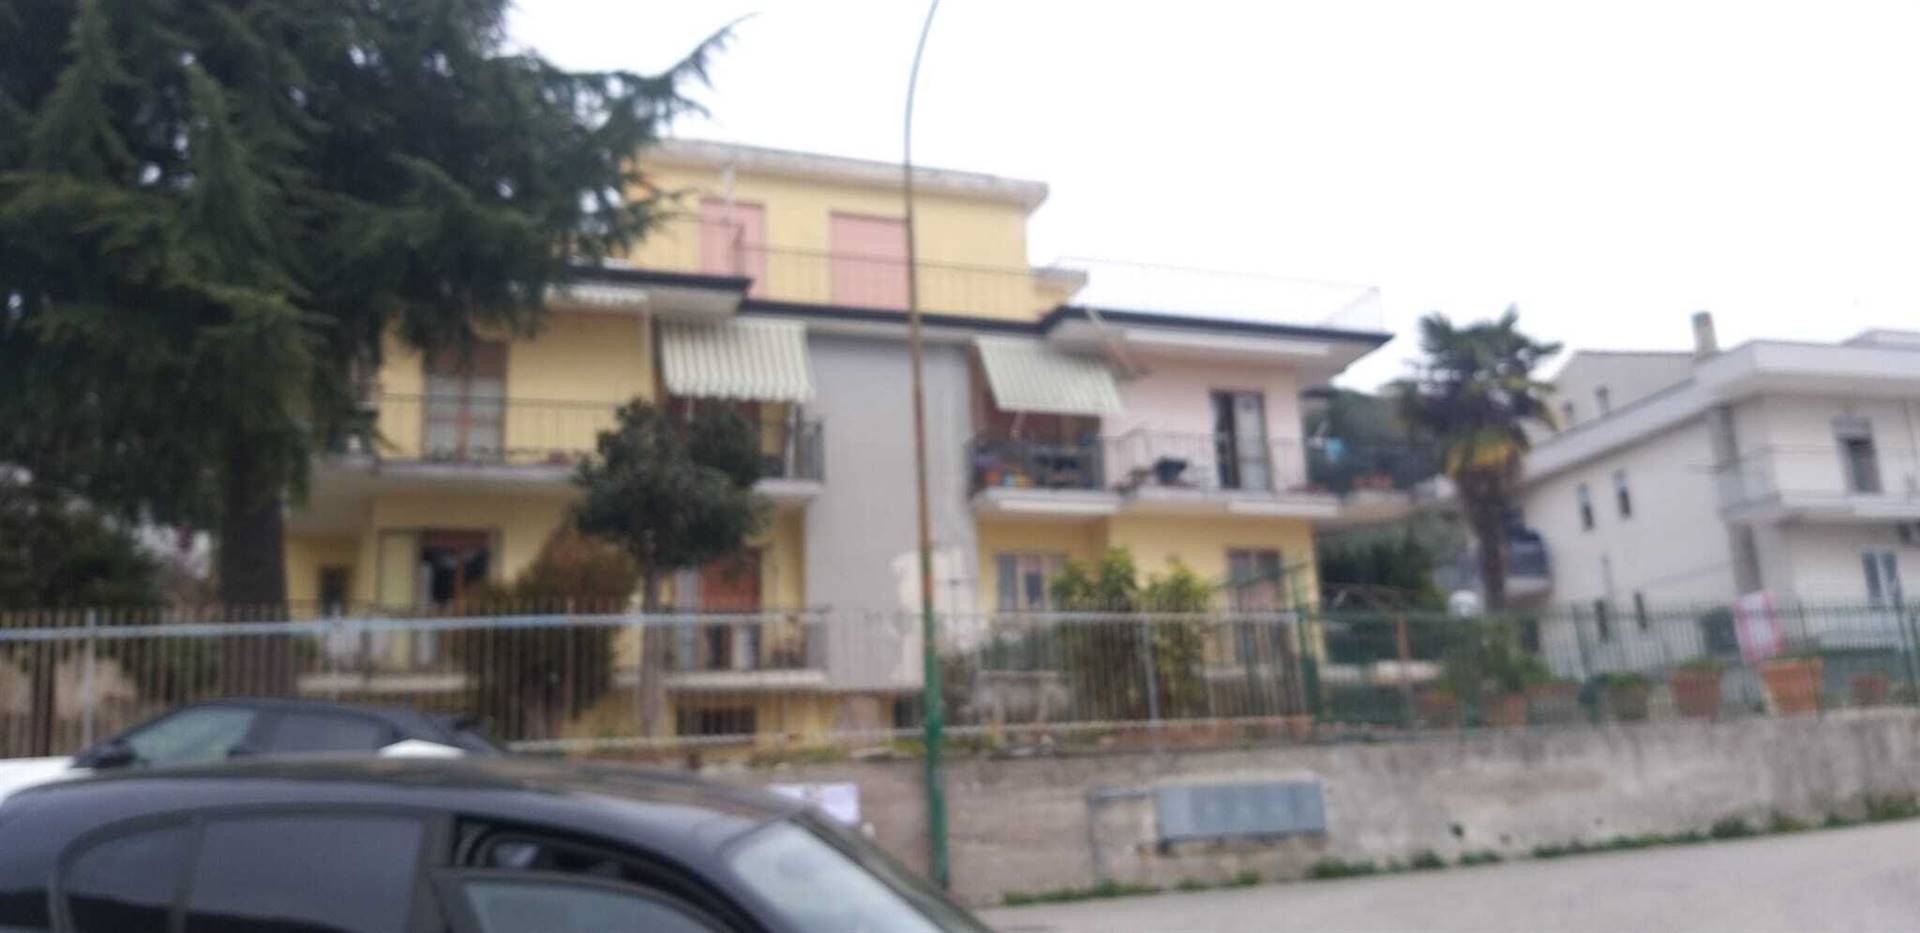 Appartamento in vendita a Montecorvino Pugliano, 3 locali, zona Località: SANTA TECLA, prezzo € 65.000 | PortaleAgenzieImmobiliari.it